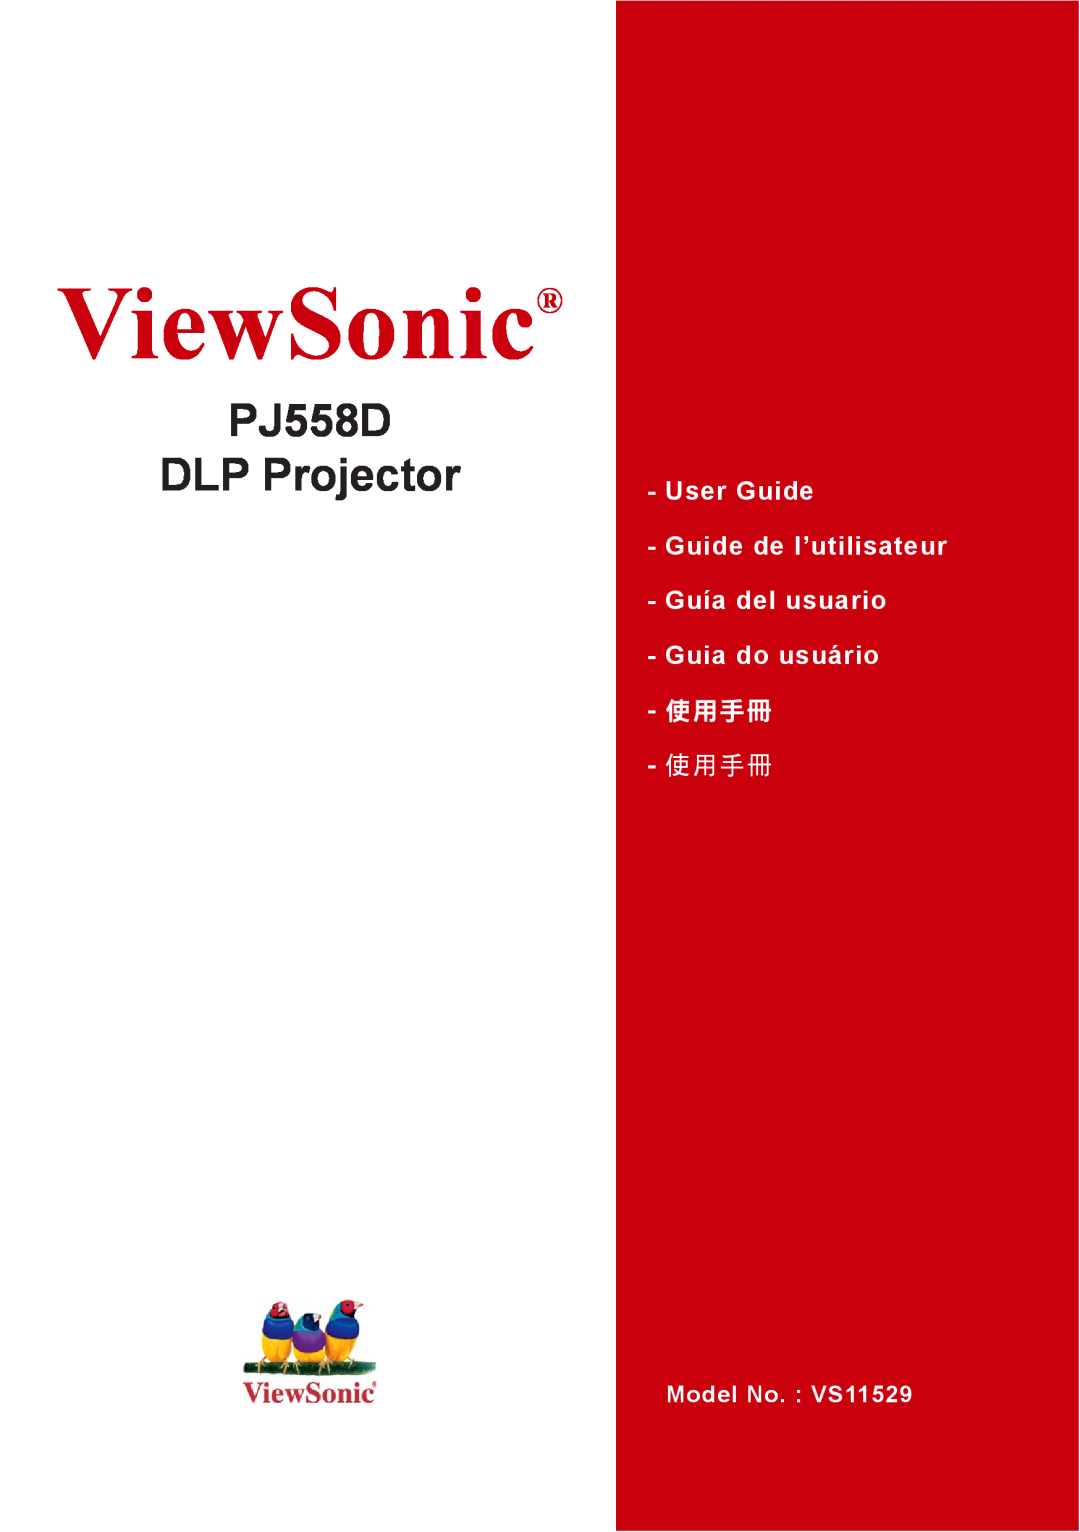 ViewSonic manual ViewSonic, PJ558D DLP Projector, User Guide Guide de l’utilisateur Guía del usuario Guia do usuário 